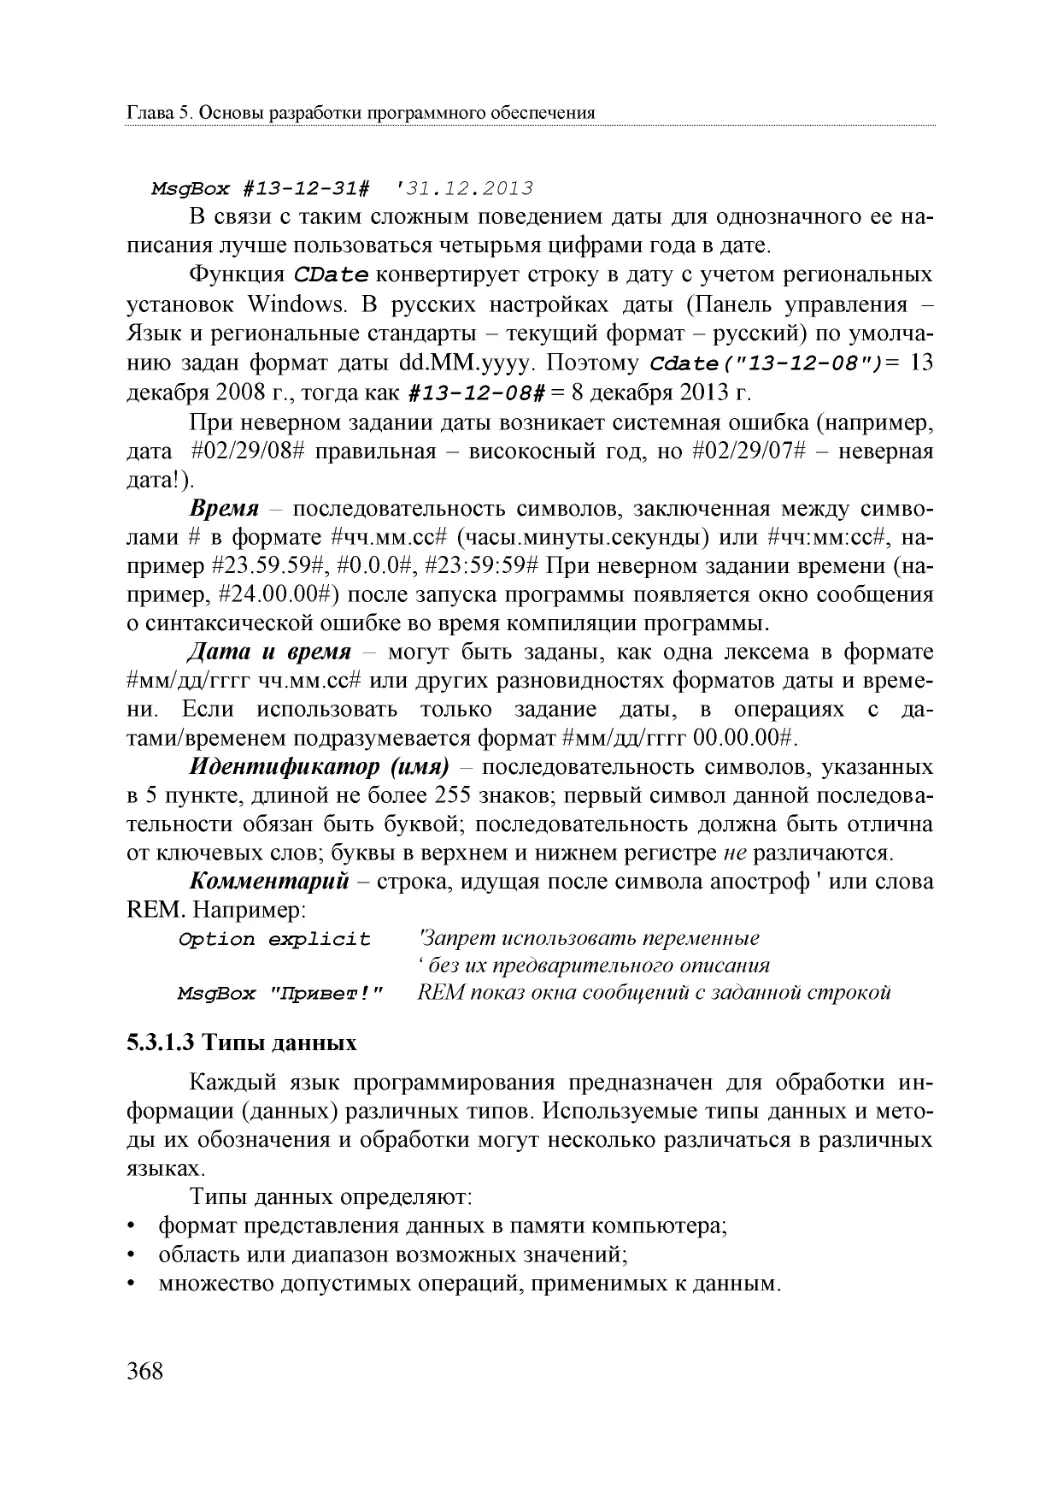 Informatika_Uchebnik_dlya_vuzov_2010 368